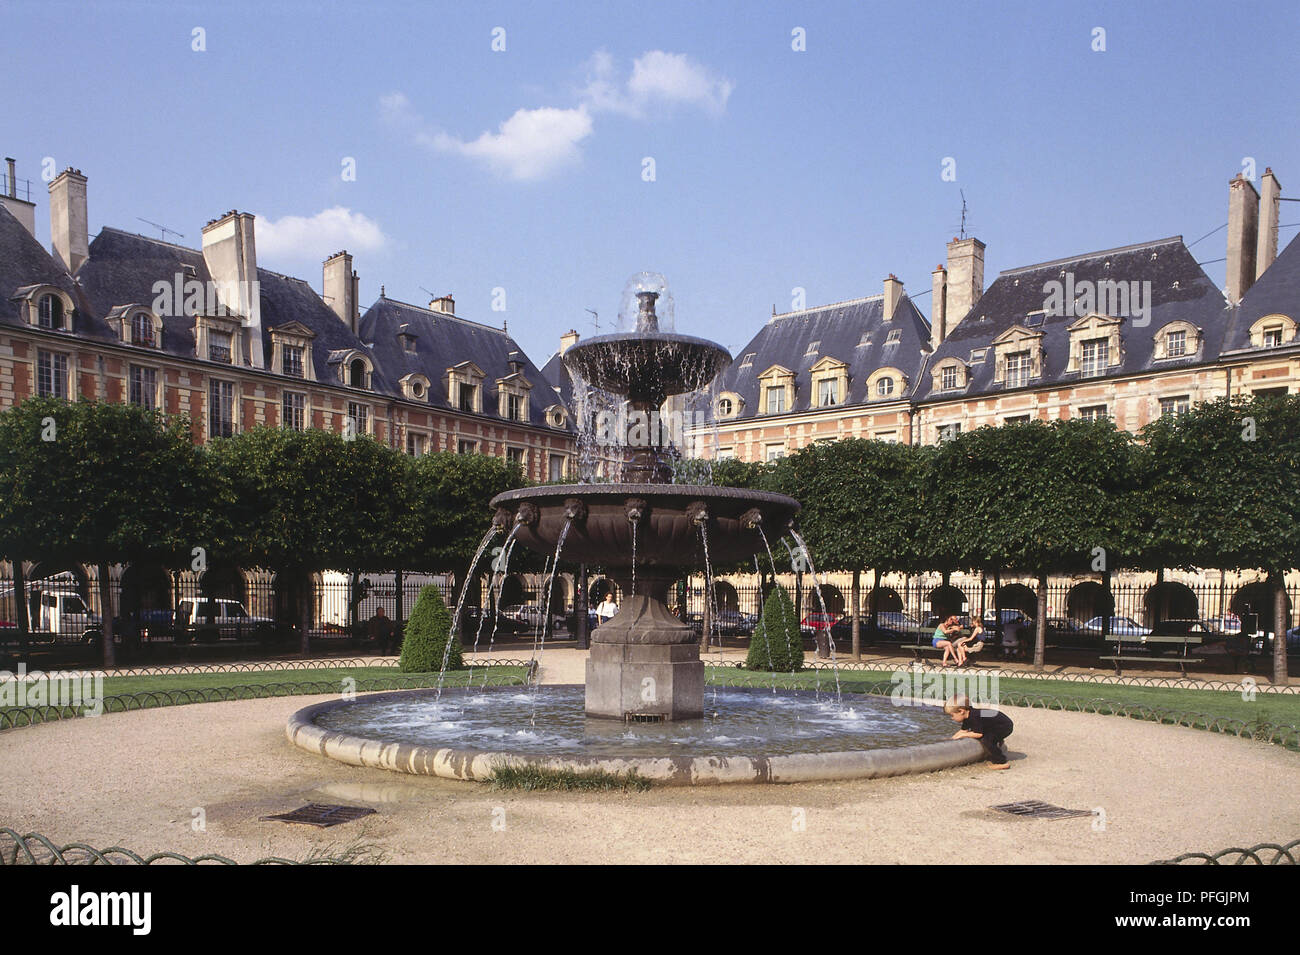 Francia, Parigi, Marais, Place des Vosges circondano una fontana nel cortile centrale, bella piazza con la fontana nel mezzo. Foto Stock